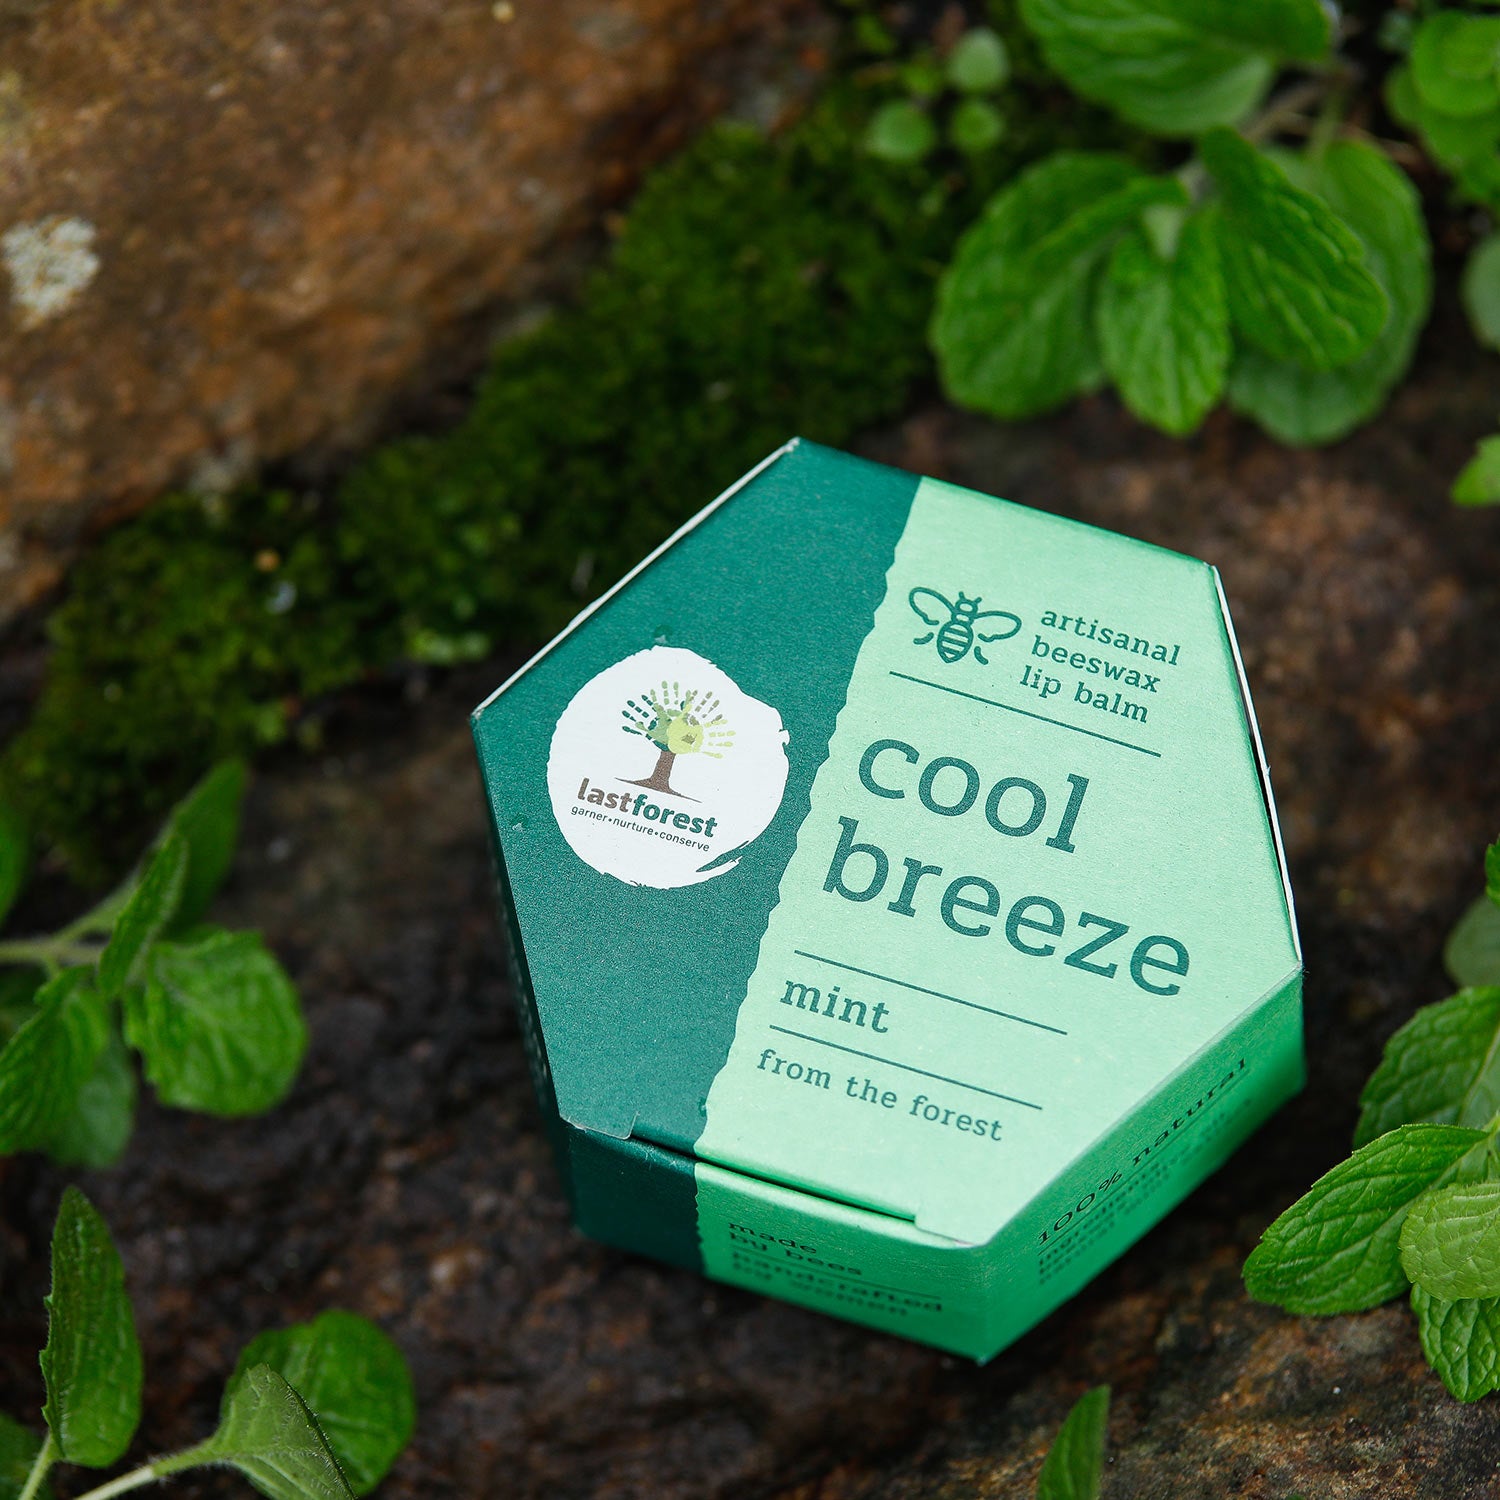 Last Forest Artisanal, Handmade Beeswax Lip Balm Mint